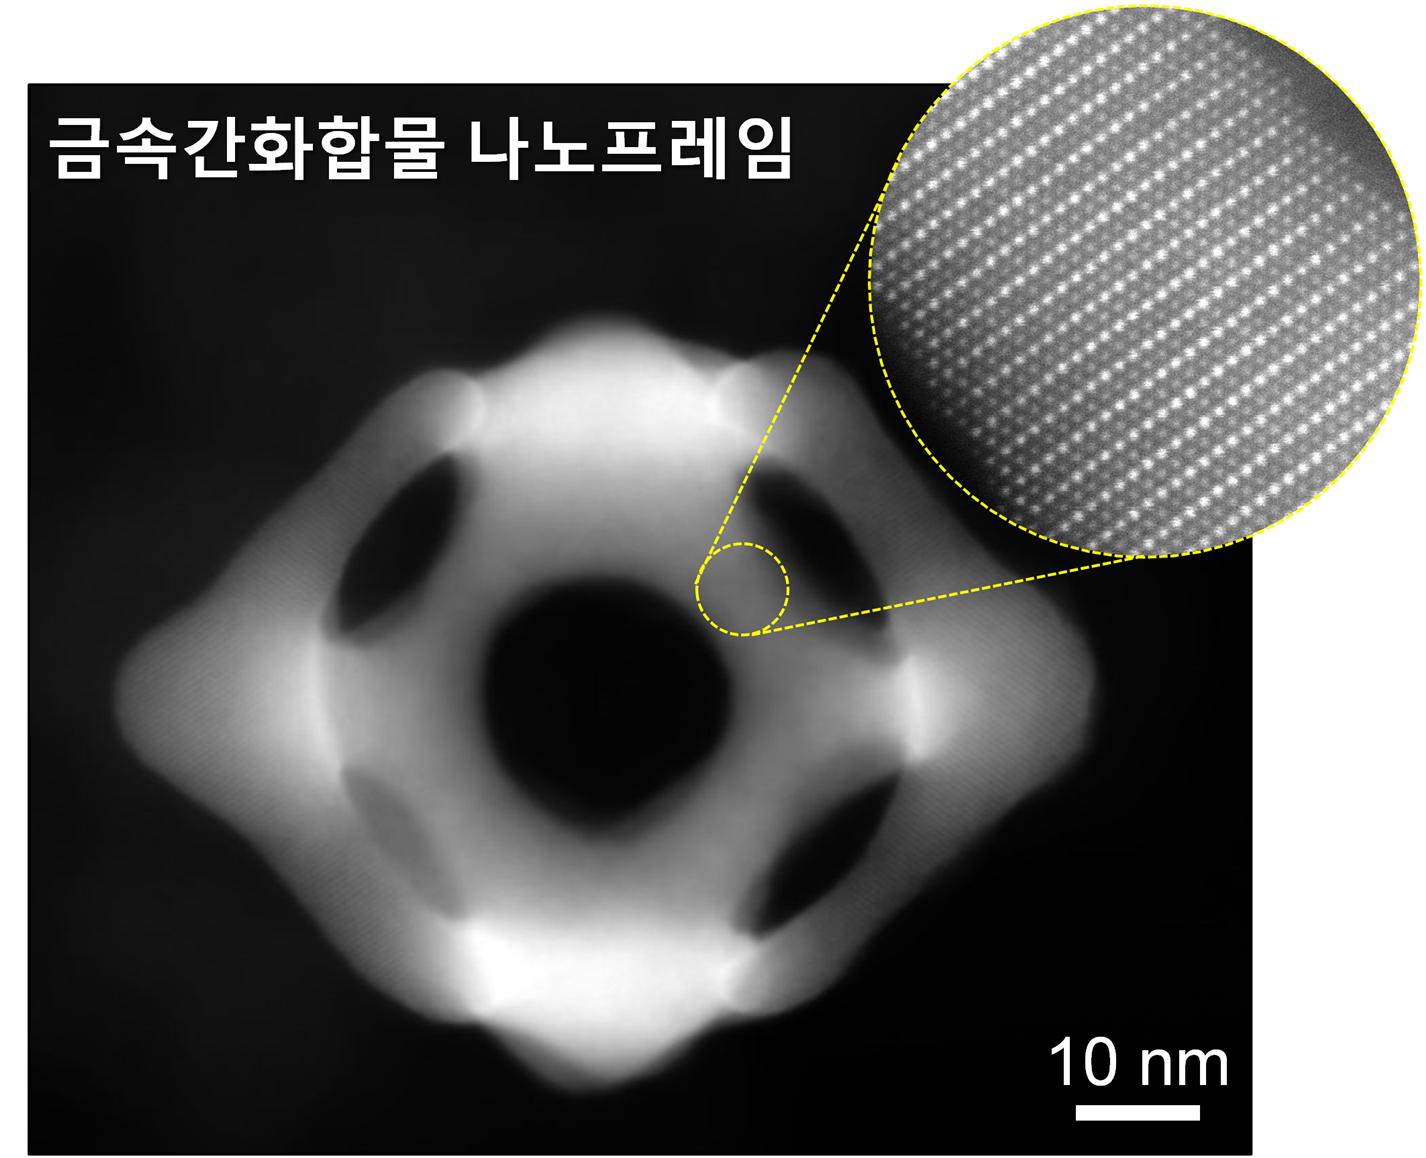 그림1. 금속간화합물 나노프레임 촉매의 투과전자현미경 사진